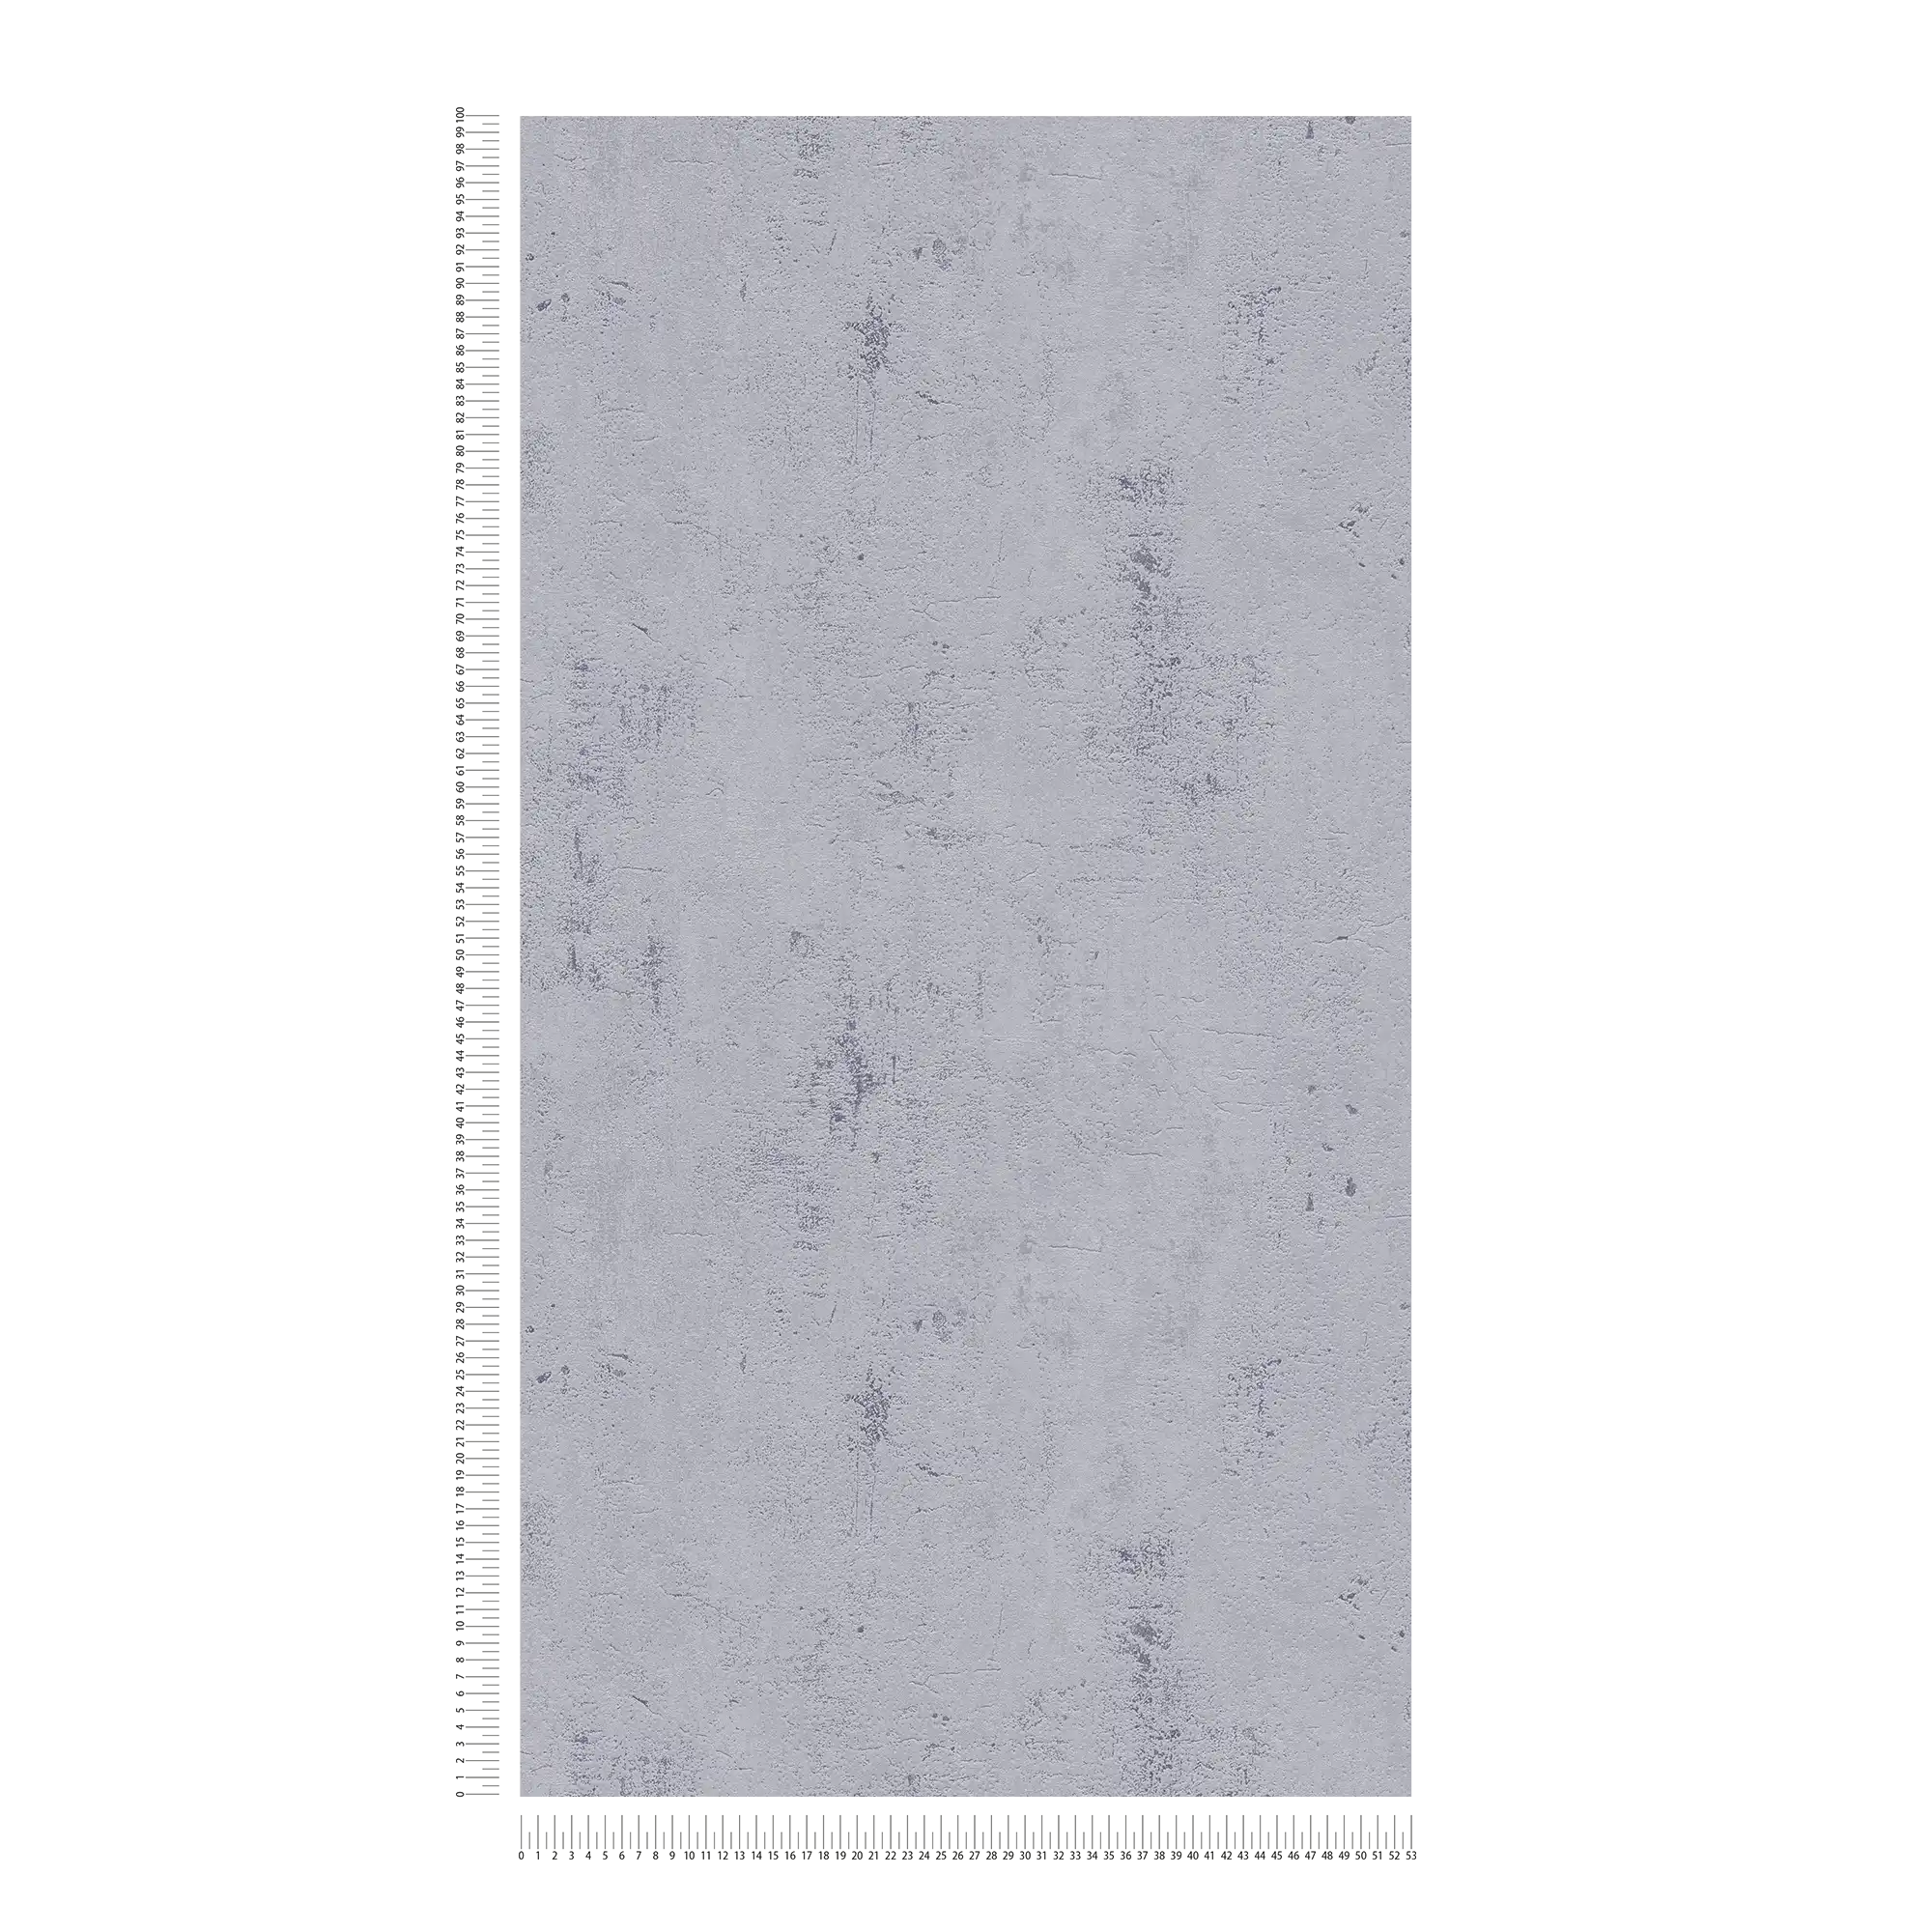             Papel pintado con aspecto de yeso neutro en estilo industrial - gris
        